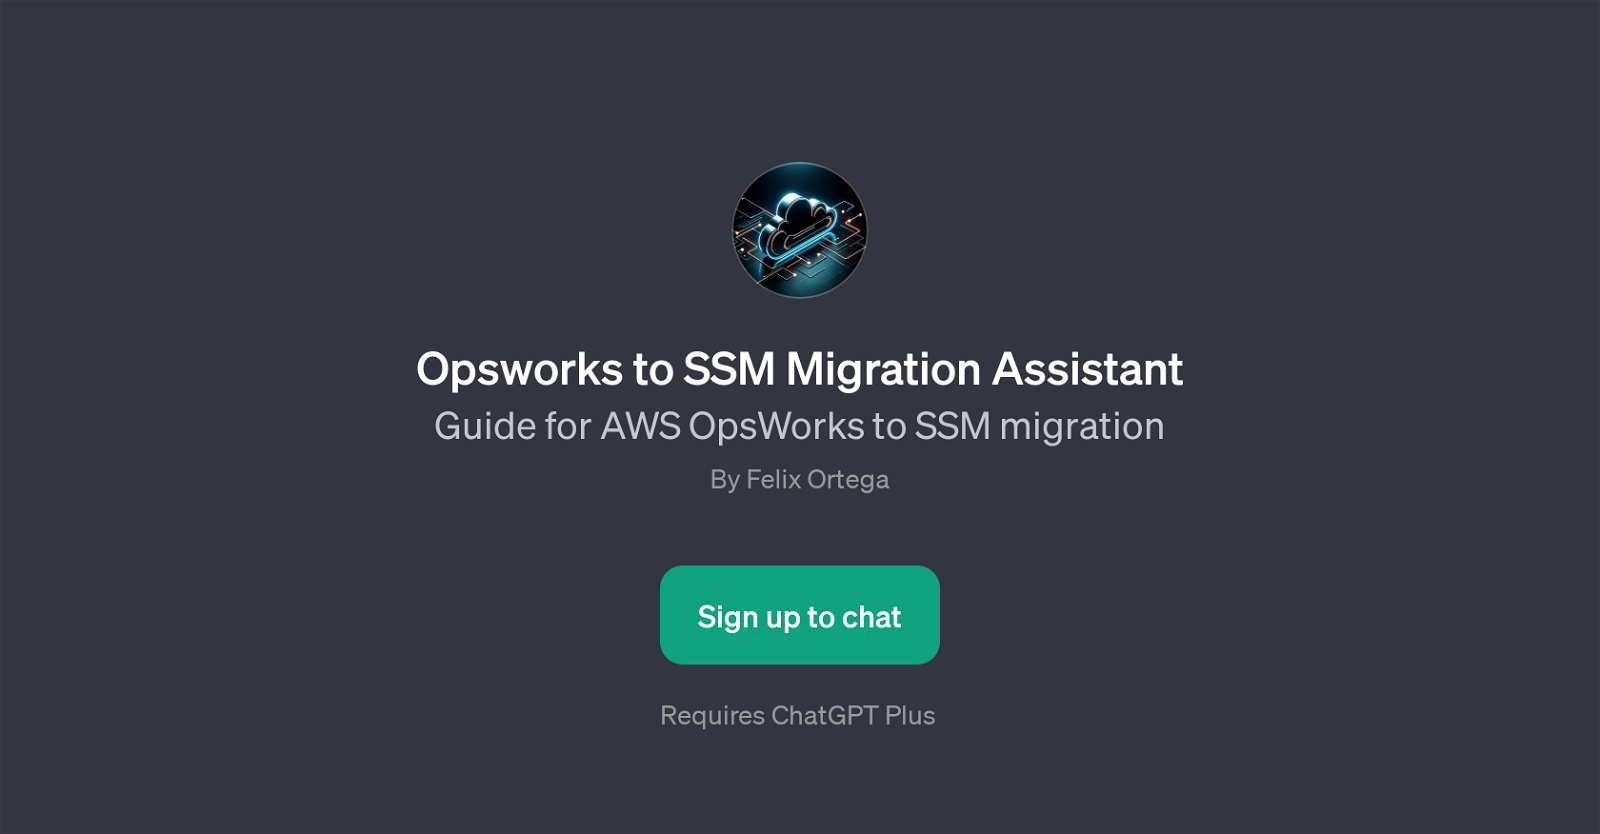 Opsworks to SSM Migration Assistant website